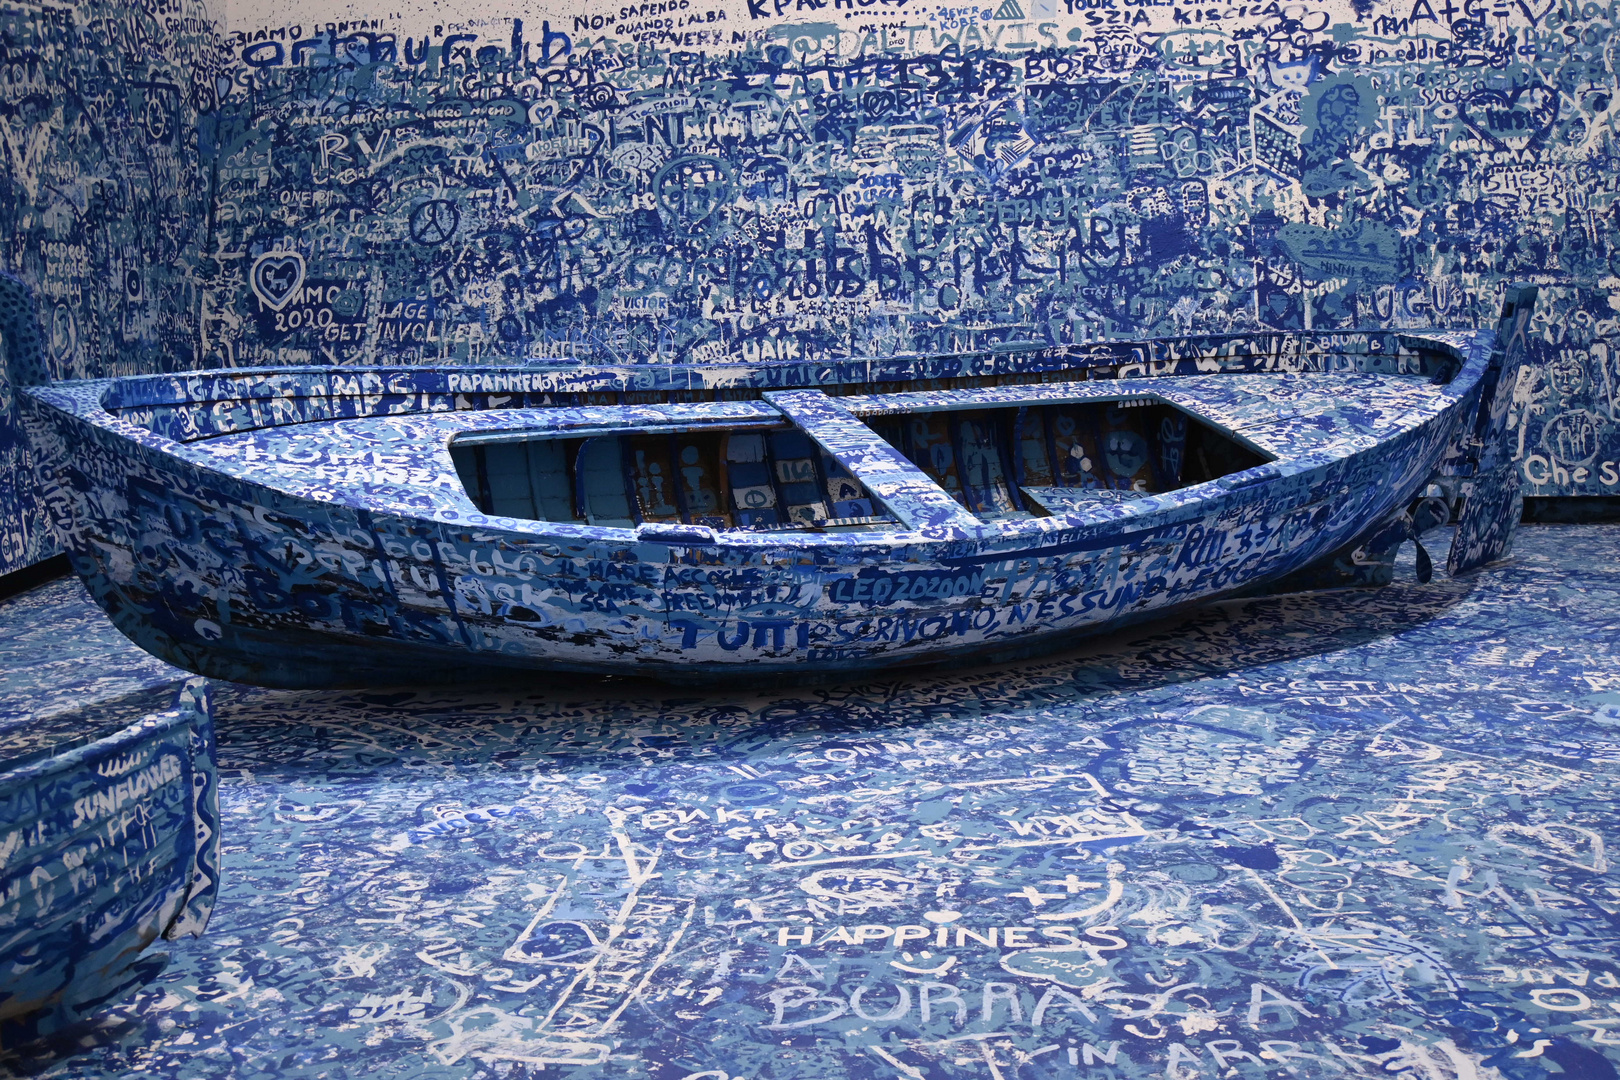 Yoko's refugee Boat (ANN_1564)